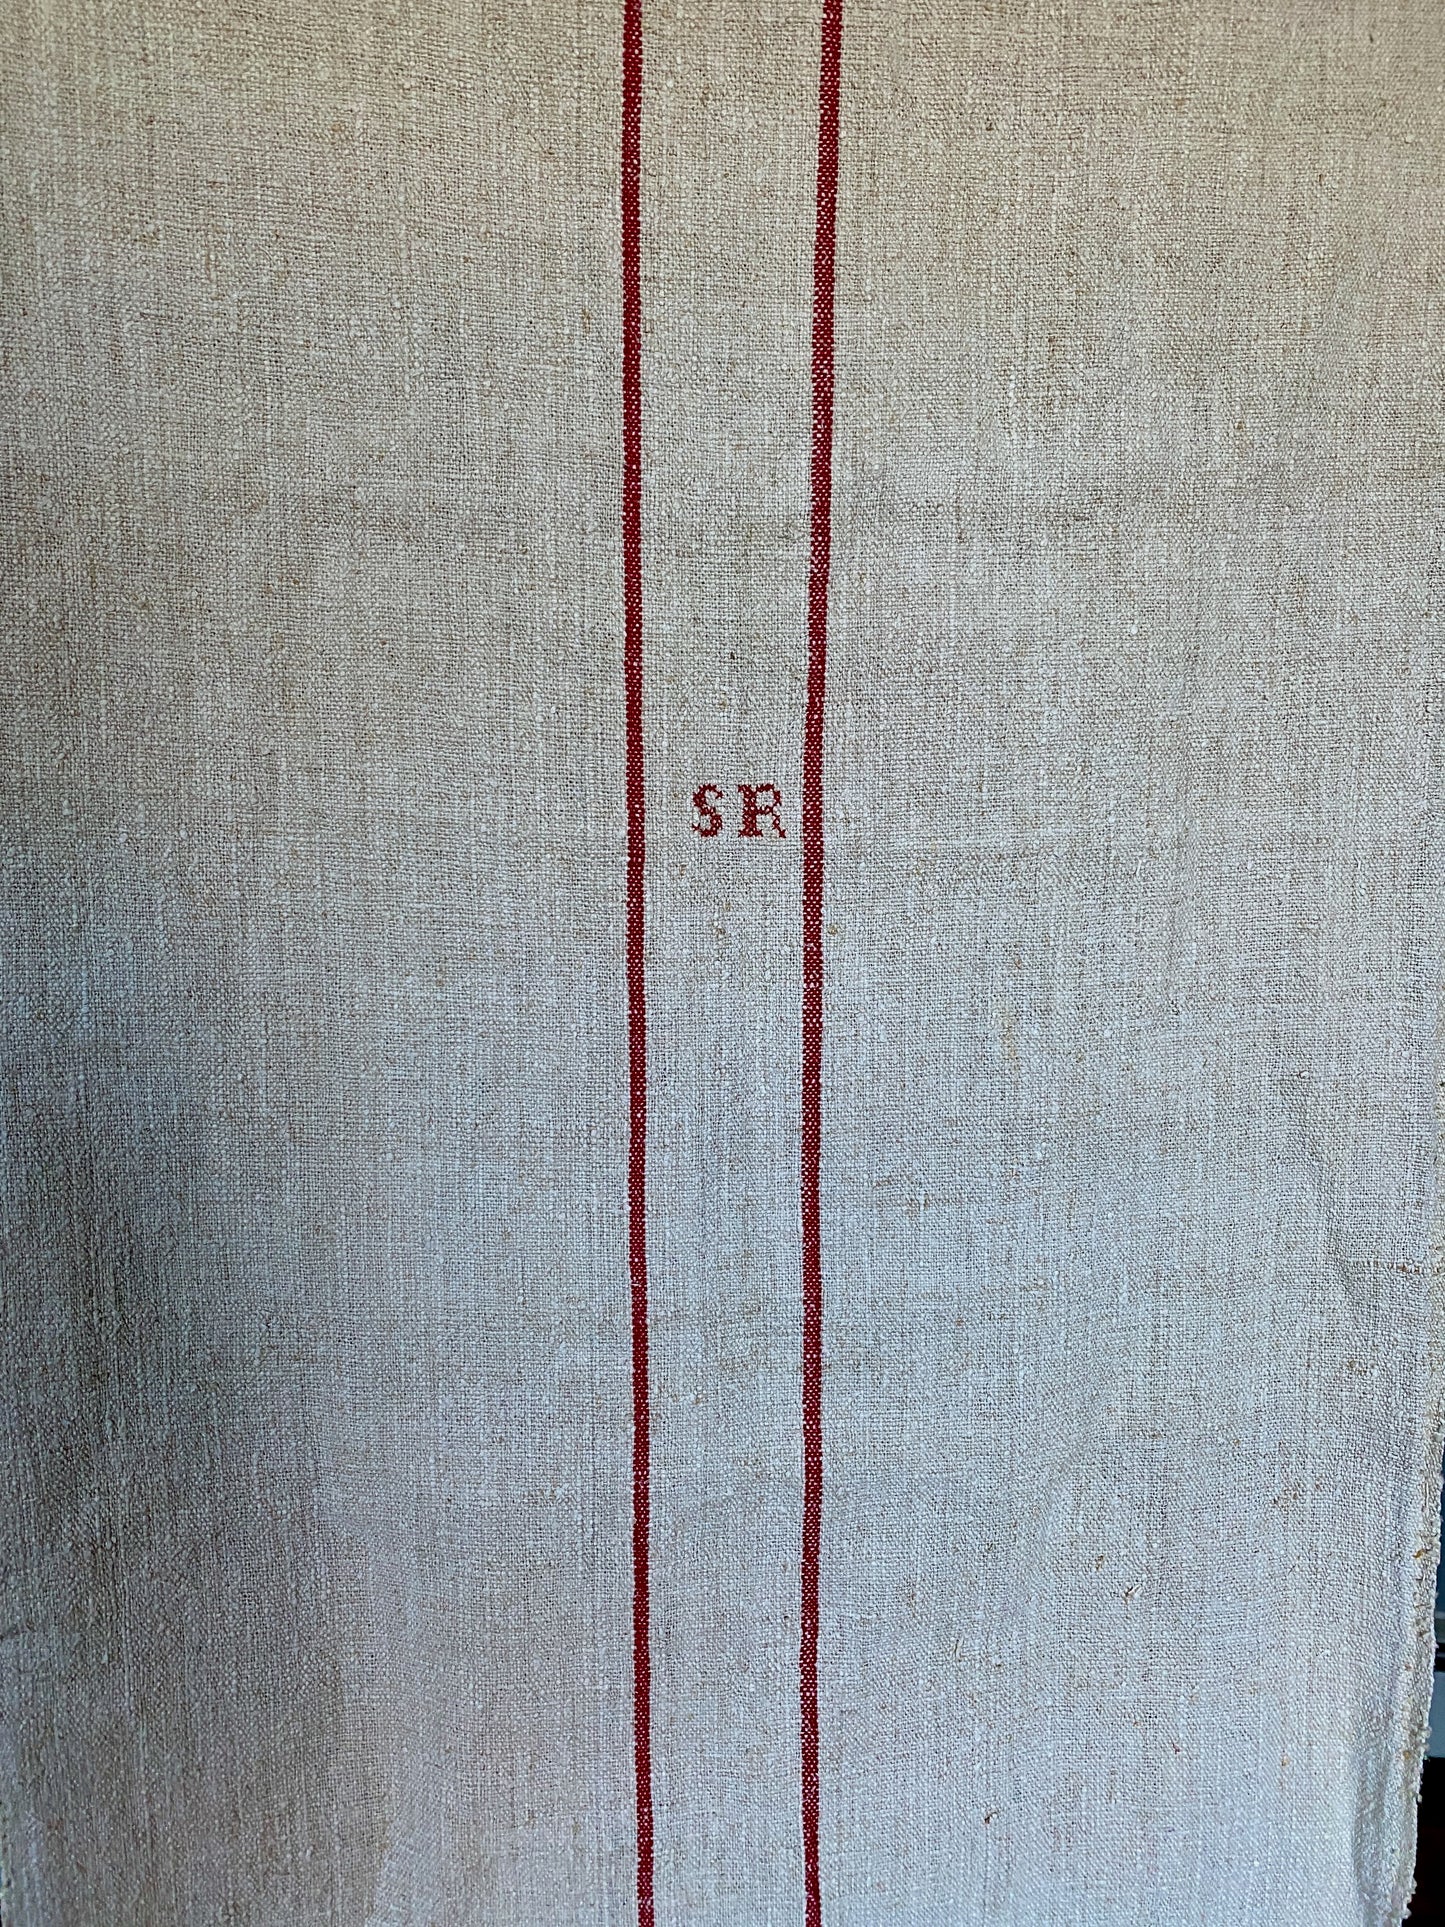 Authentic Antique Hemp GrainSack Fabric